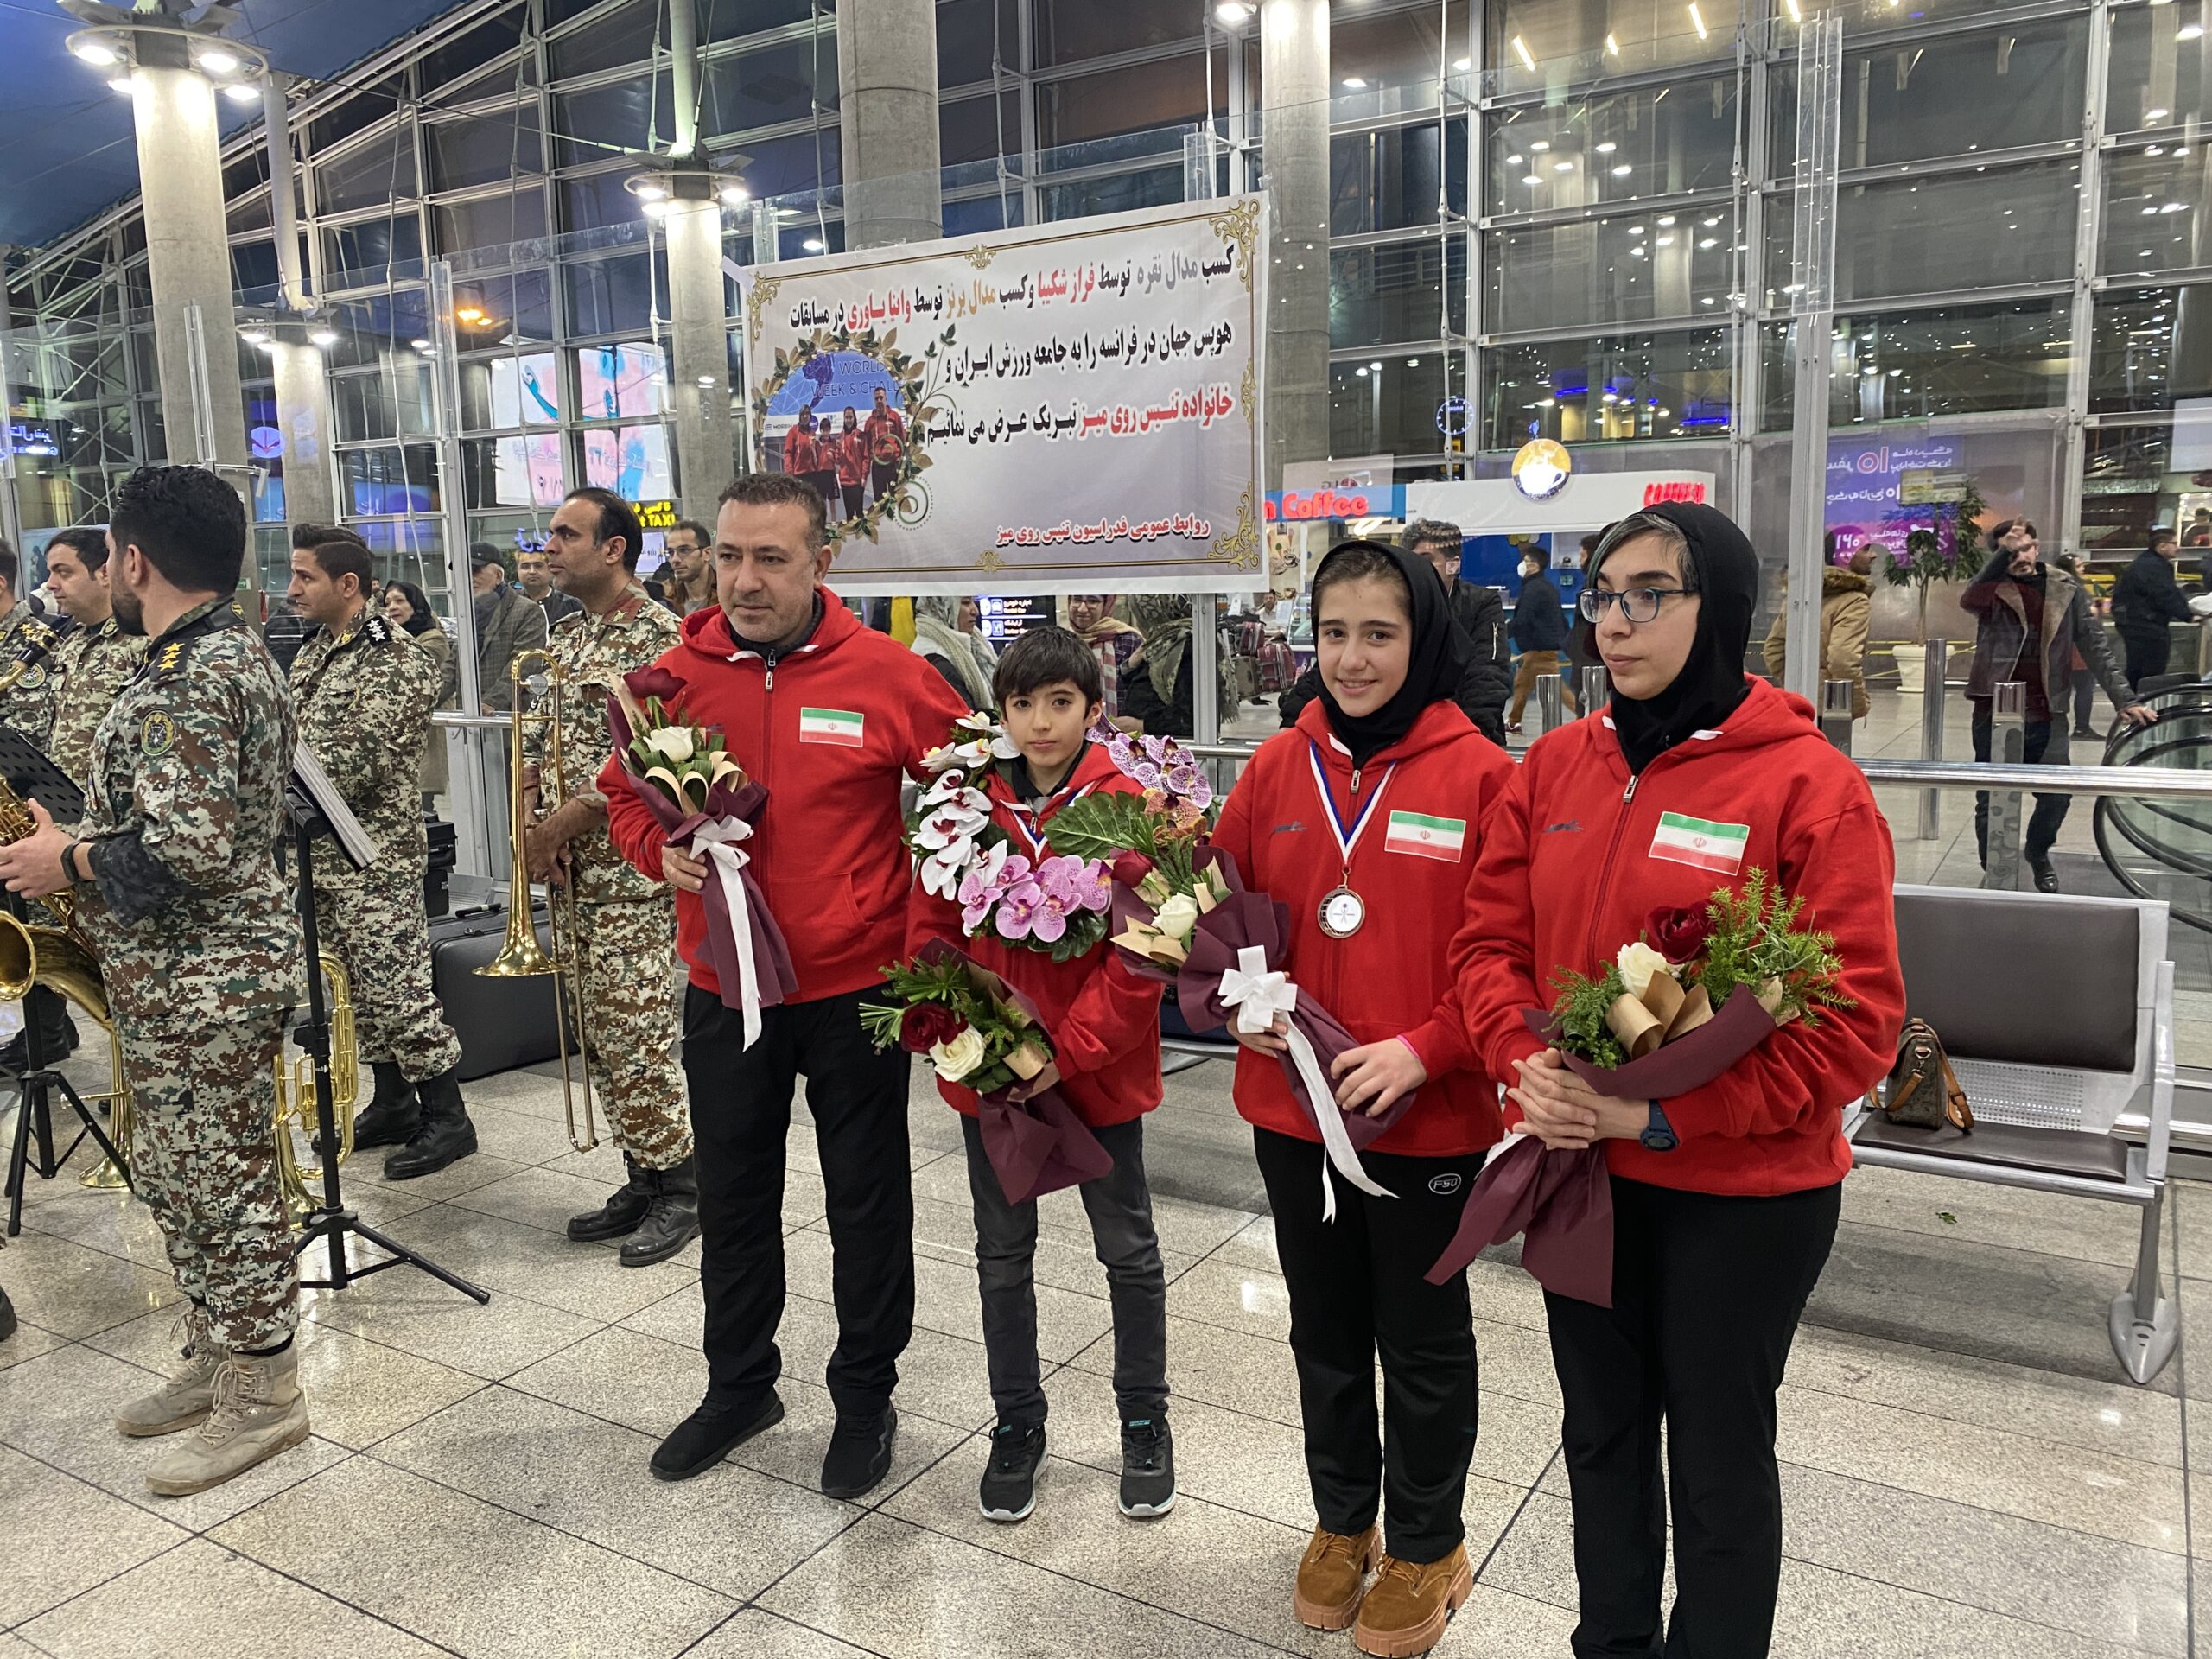 تیم ملی هوپس ایران با کسب دو مدال از آوردگاه جهانی به میهن بازگشت + تصاویر